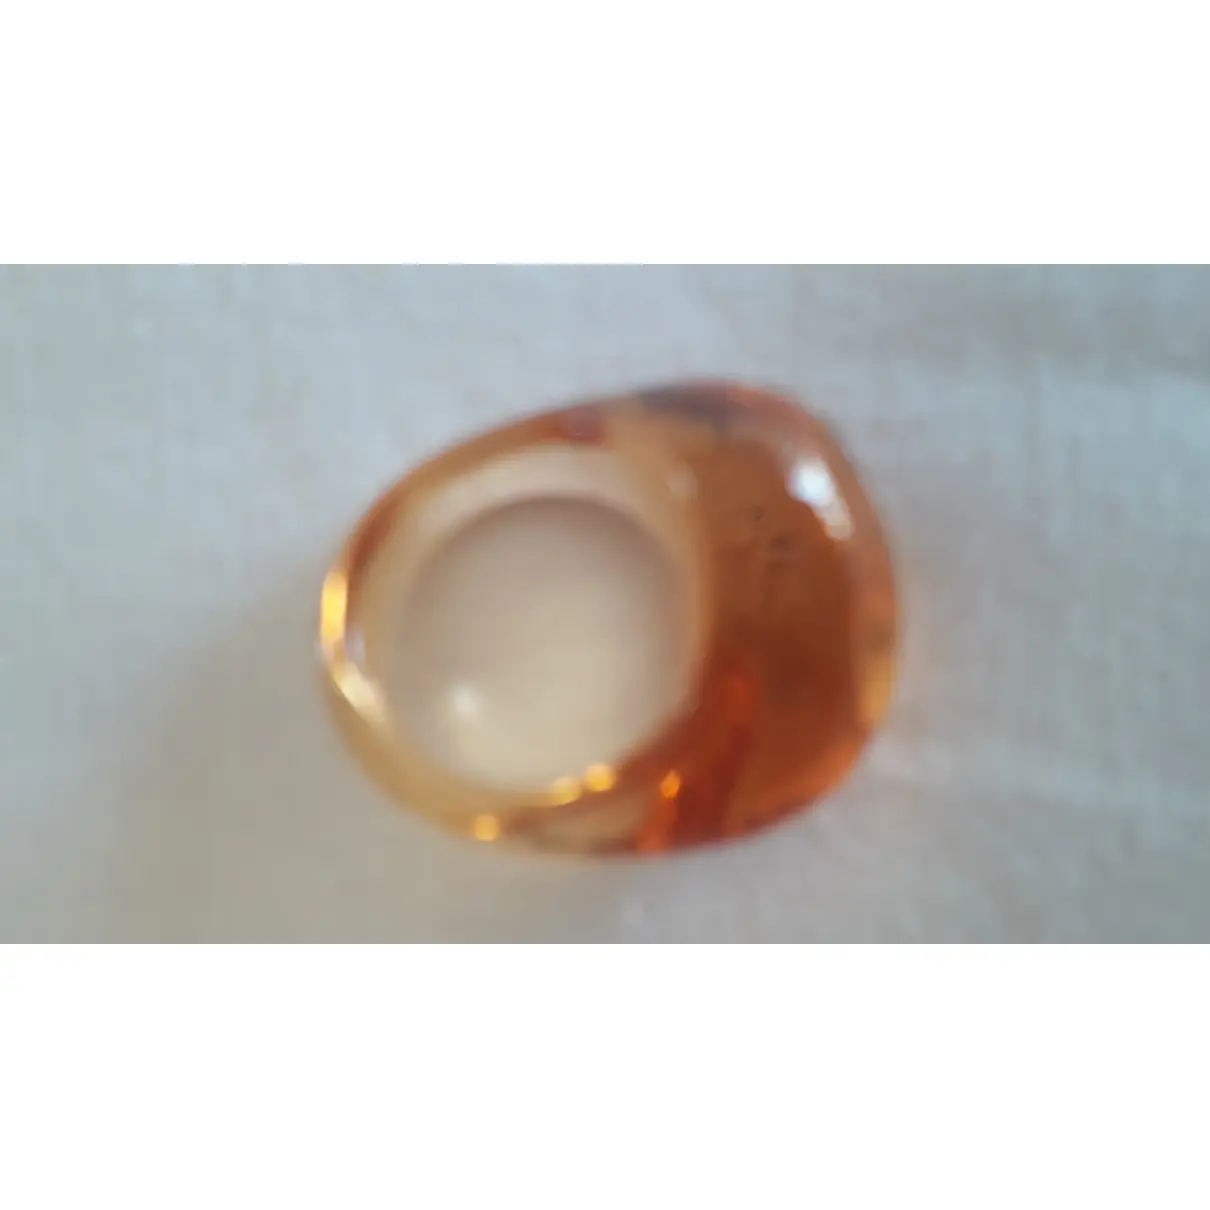 Baccarat Crystal ring for sale - Vintage